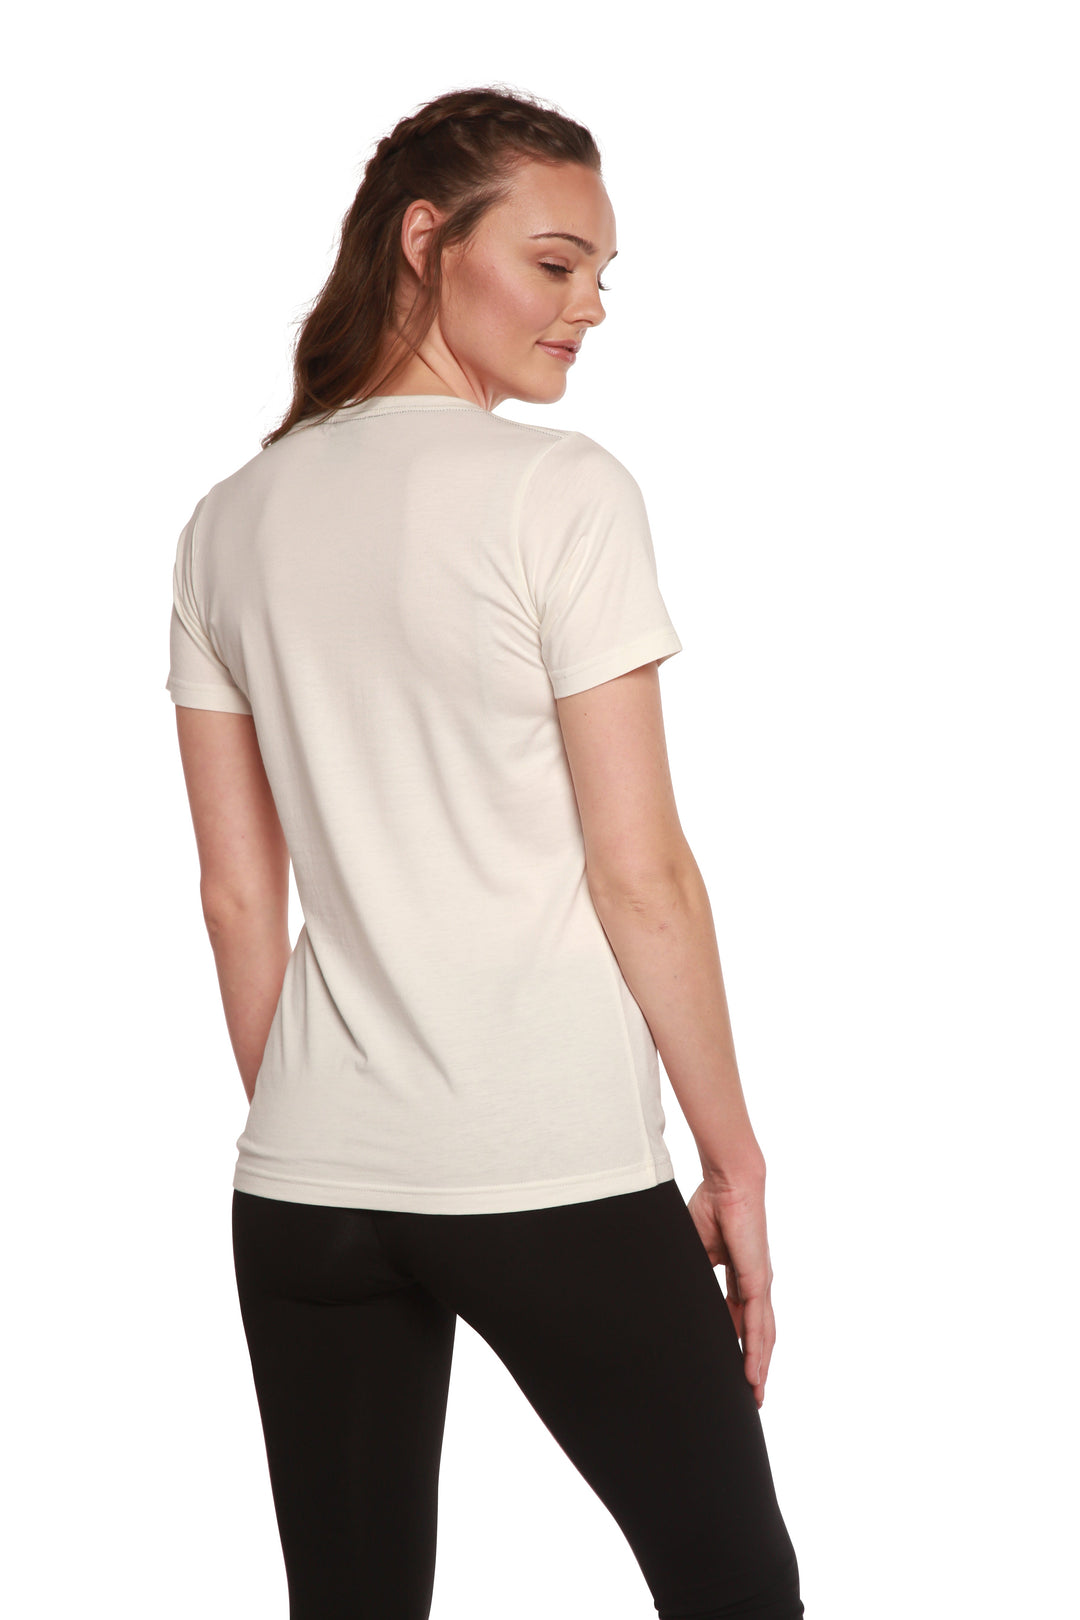 Women's Bamboo/Cotton Short Sleeve Scoop Neck T-Shirt - Spun Bamboo